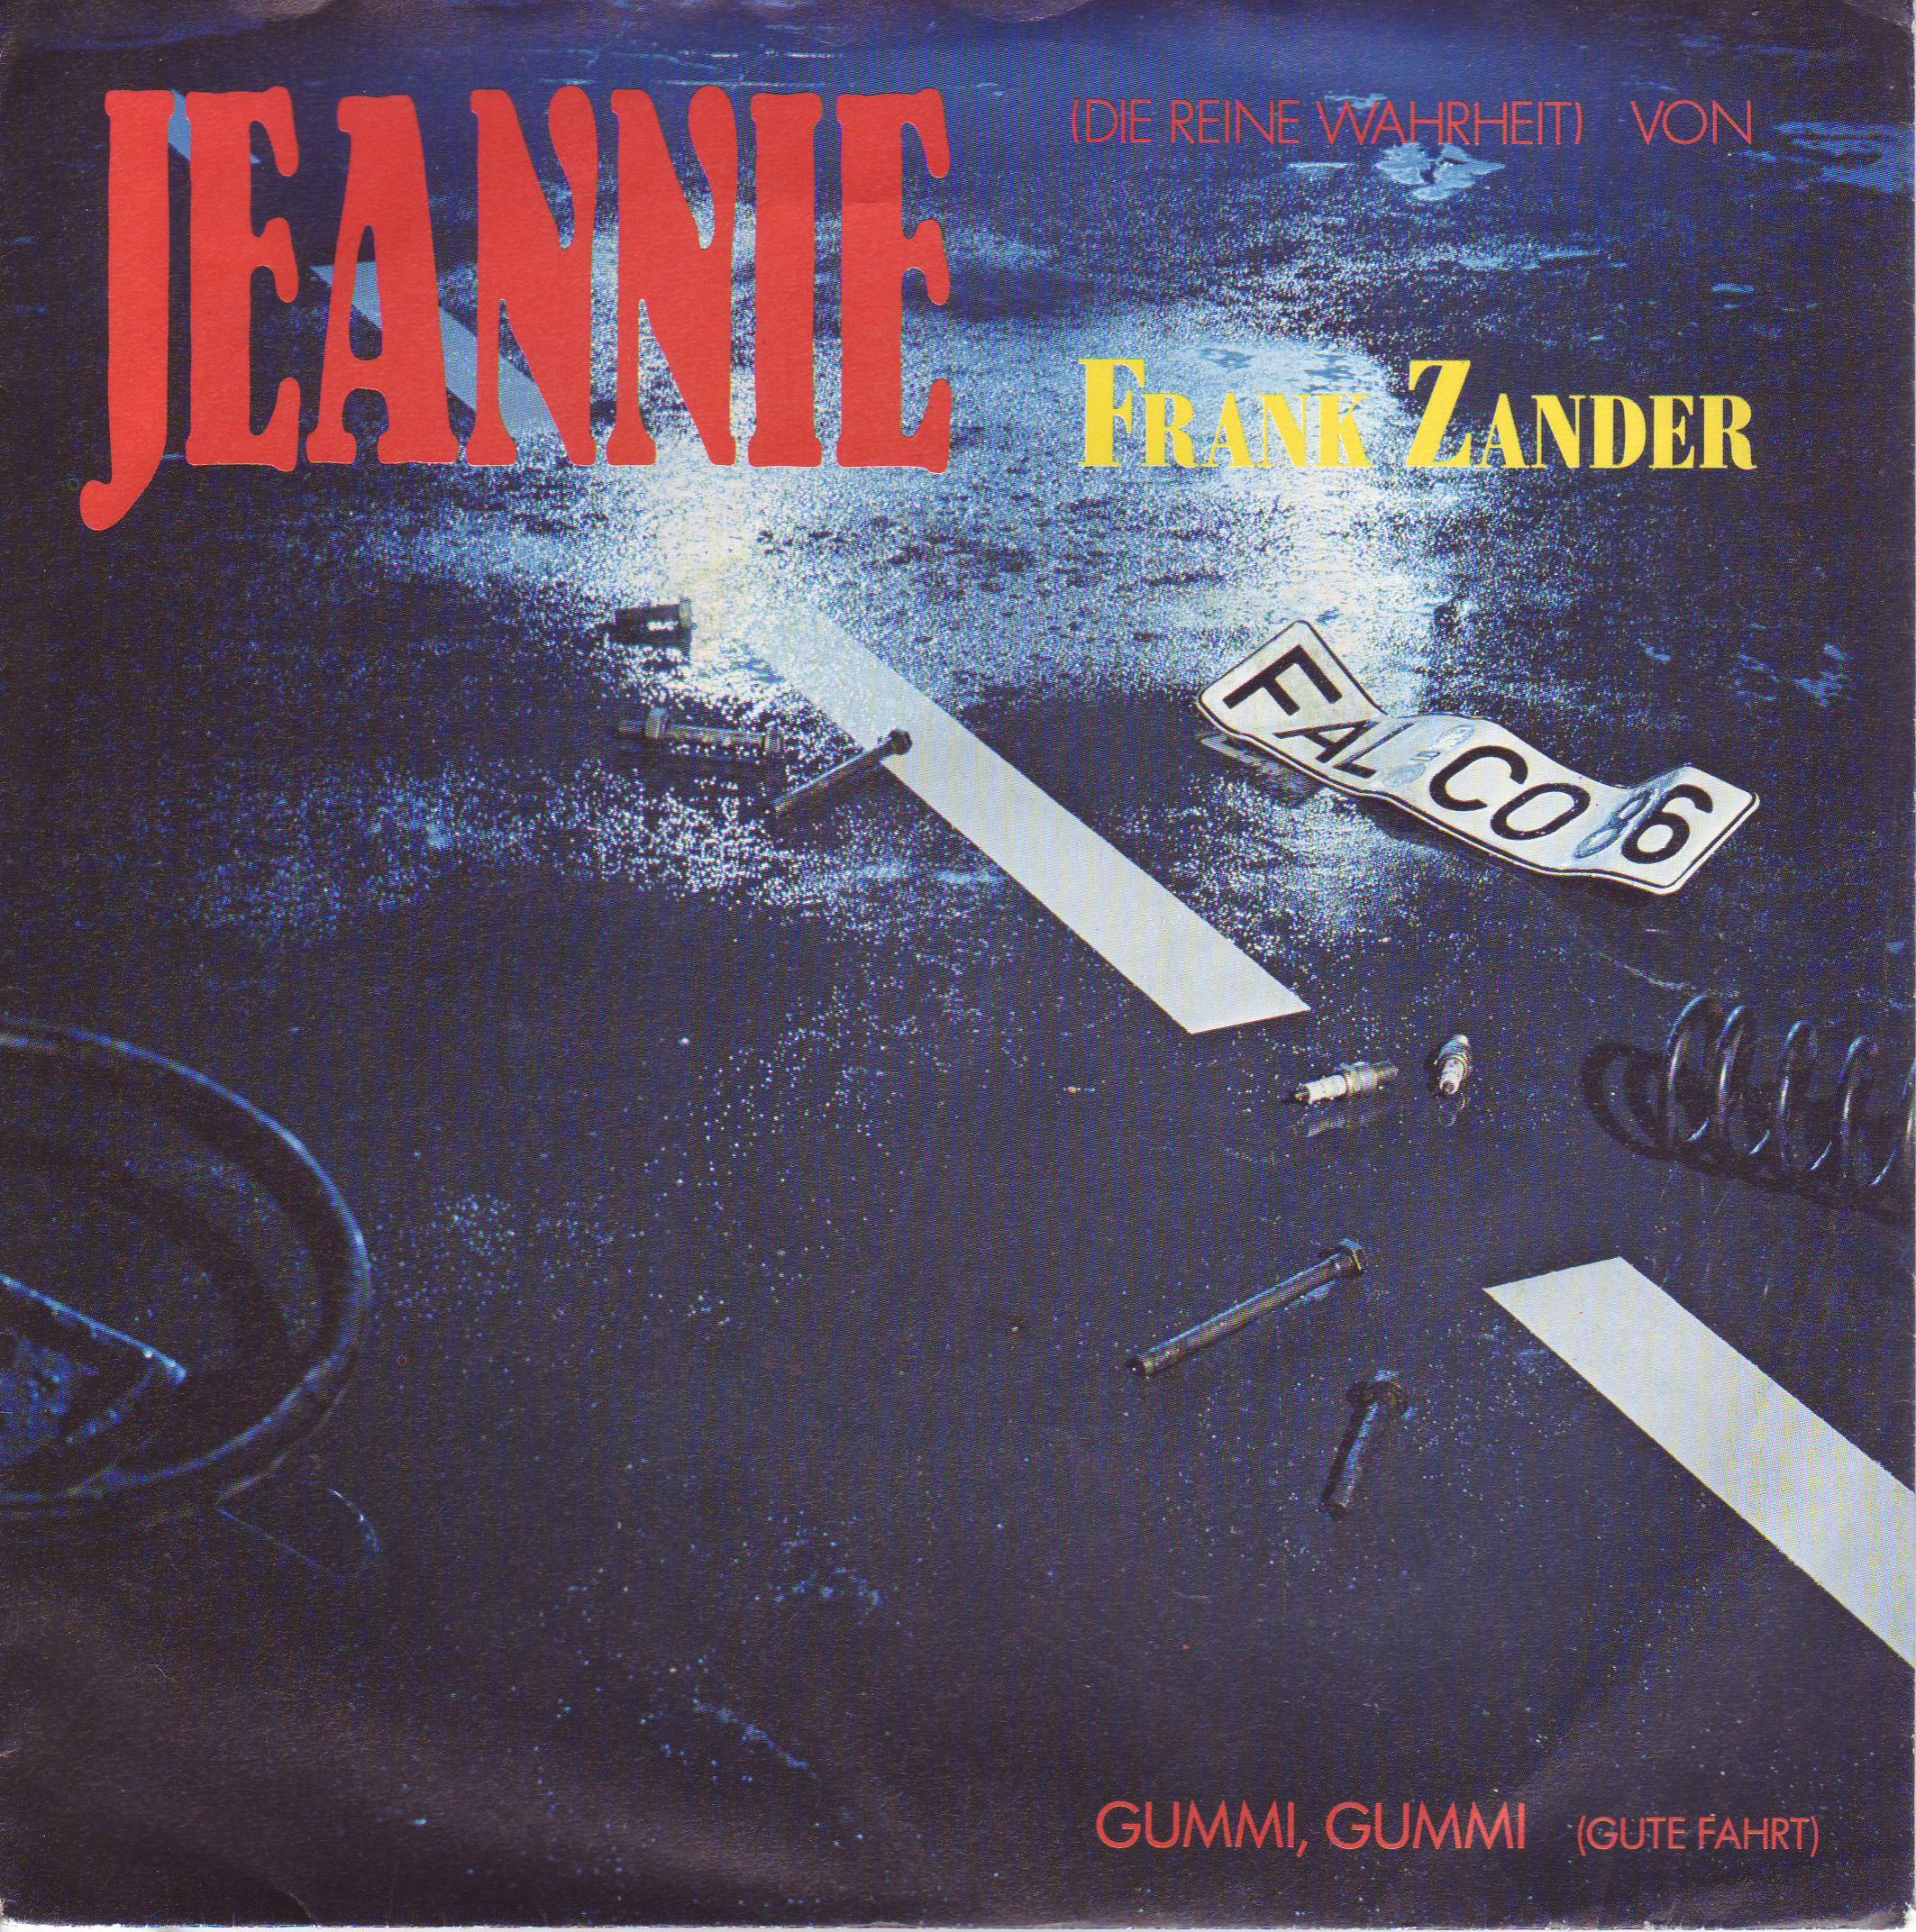 Zander Frank - Jeannie (Die reine Wahrheit)